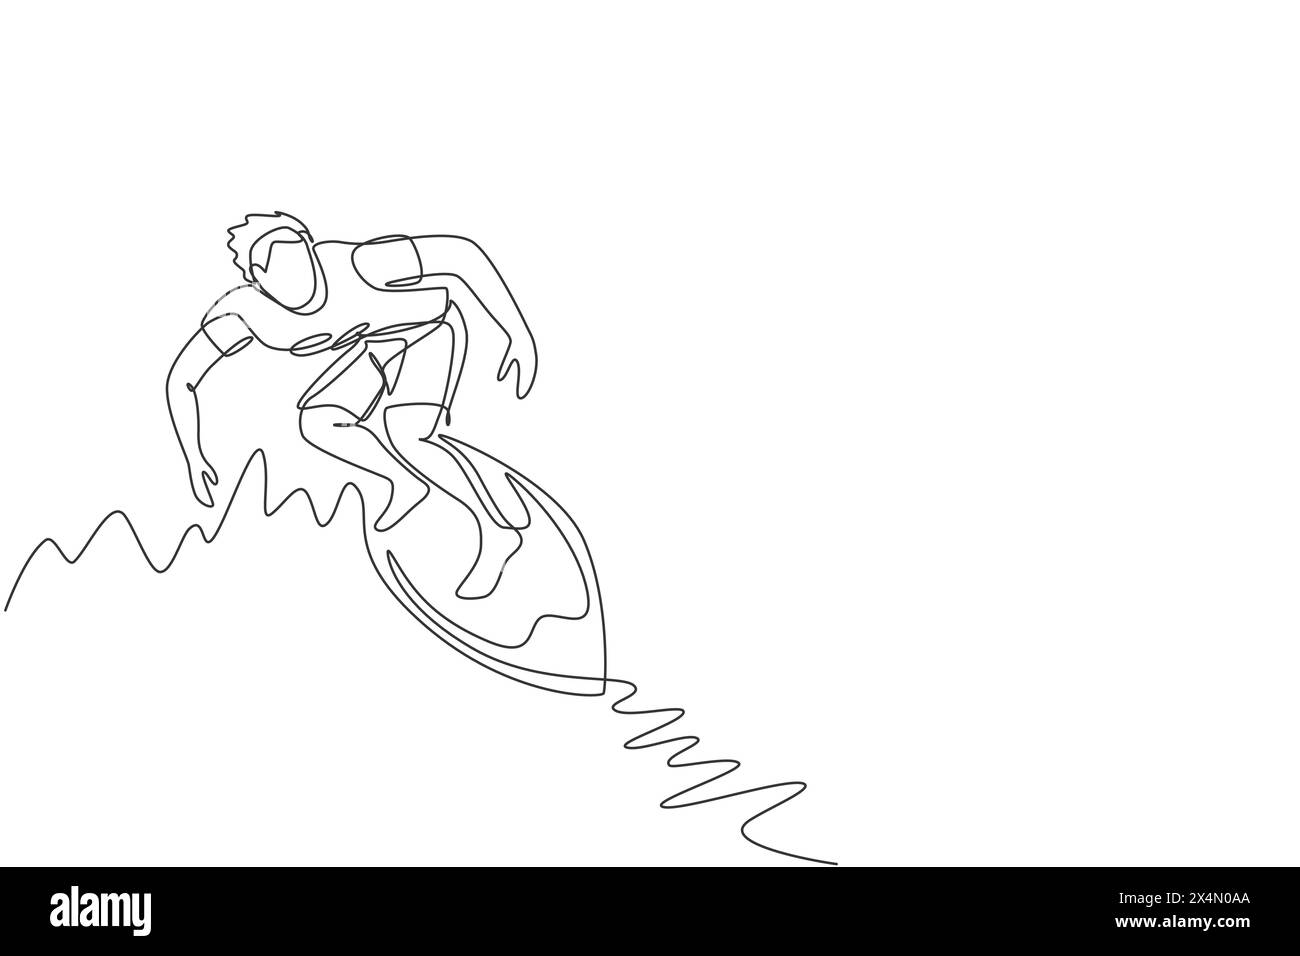 Un dessin simple ligne de jeune homme surfeur sportif chevauchant sur le baril de grandes vagues dans l'illustration vectorielle de paradis de plage de surf. Des sports nautiques extrêmes Illustration de Vecteur